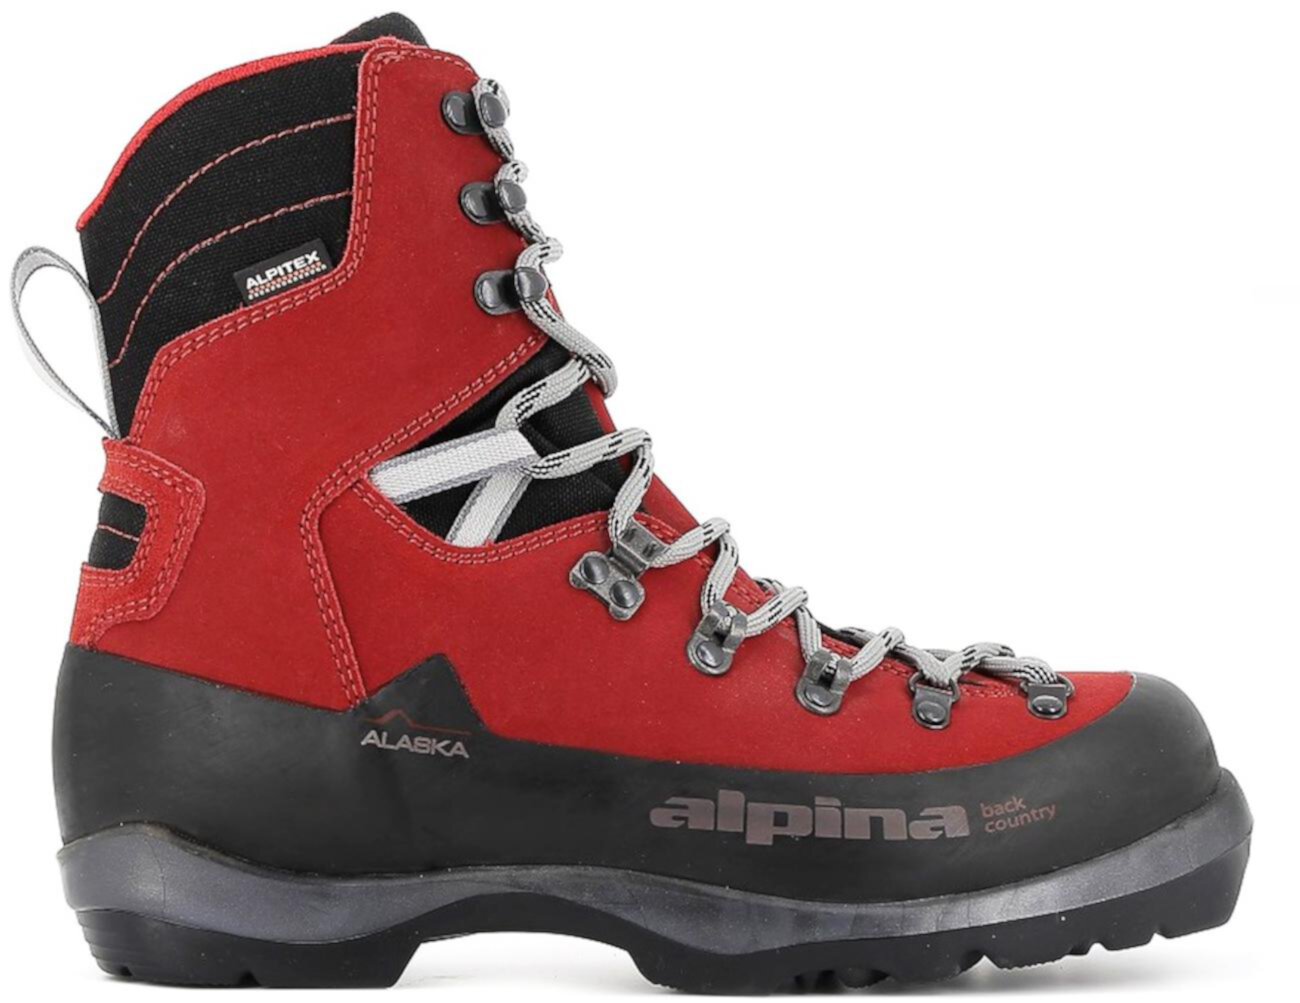 Ботинки для беговых лыж Alaska BC Alpina